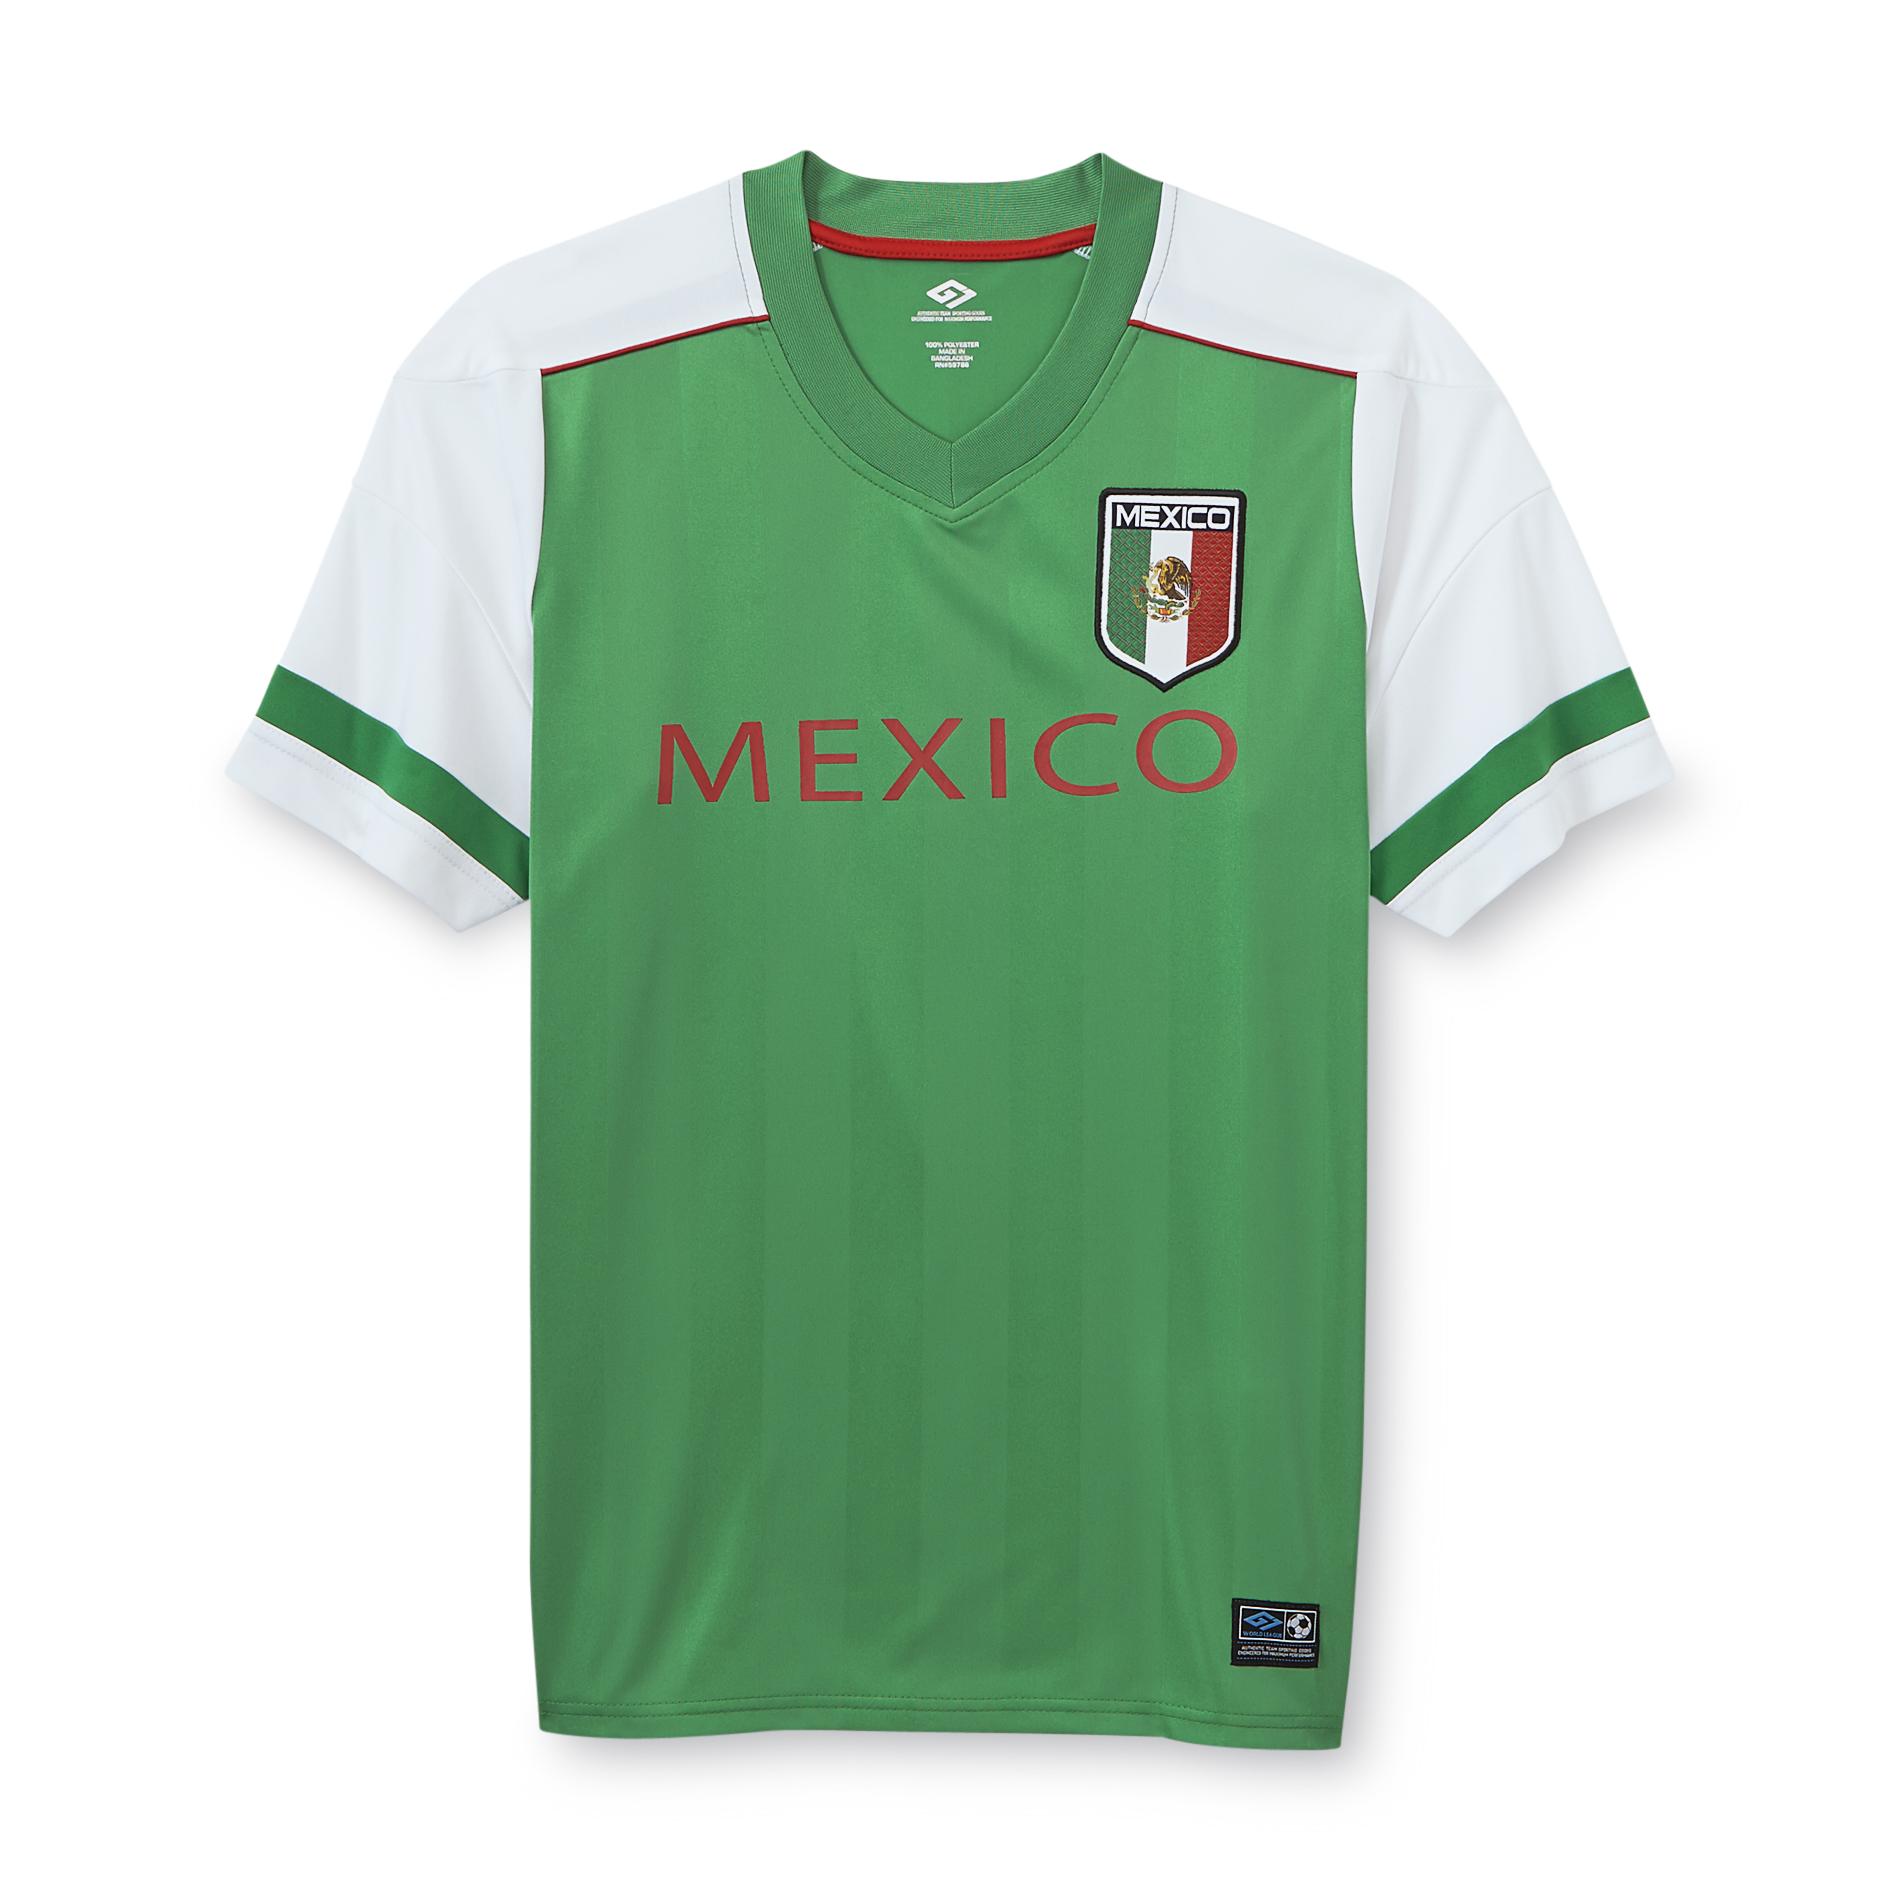 EURO SOCCER Men's World League Soccer Jersey - Mexico